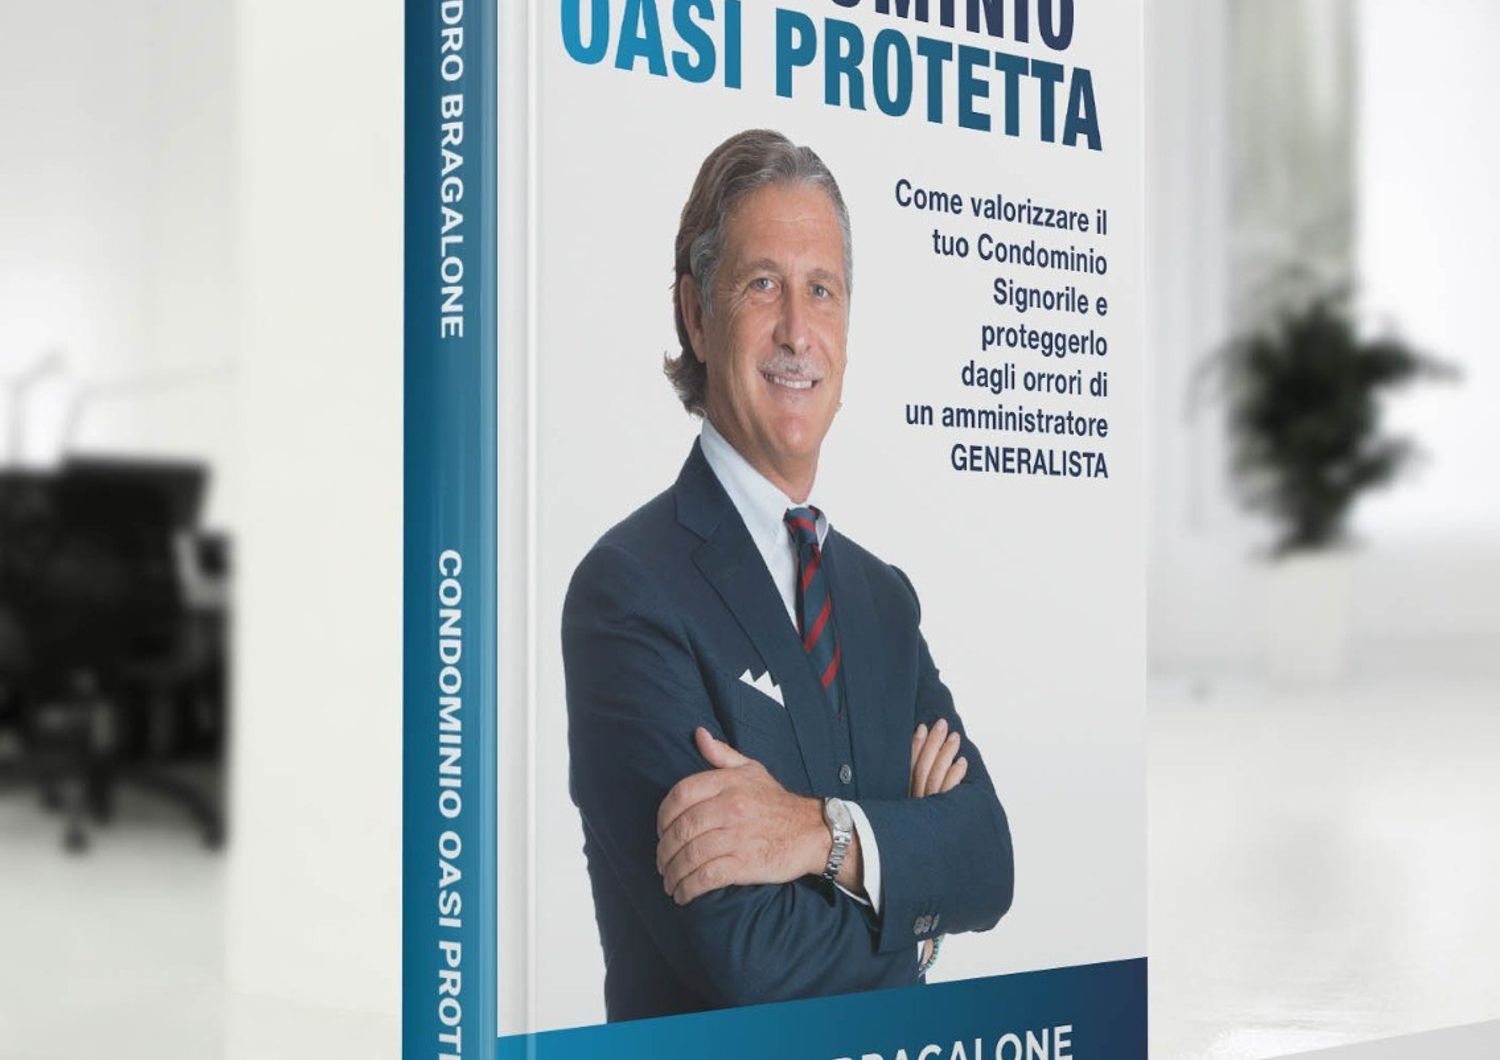 Libri Condominio Oasi Protetta guida Sandro Bragalone